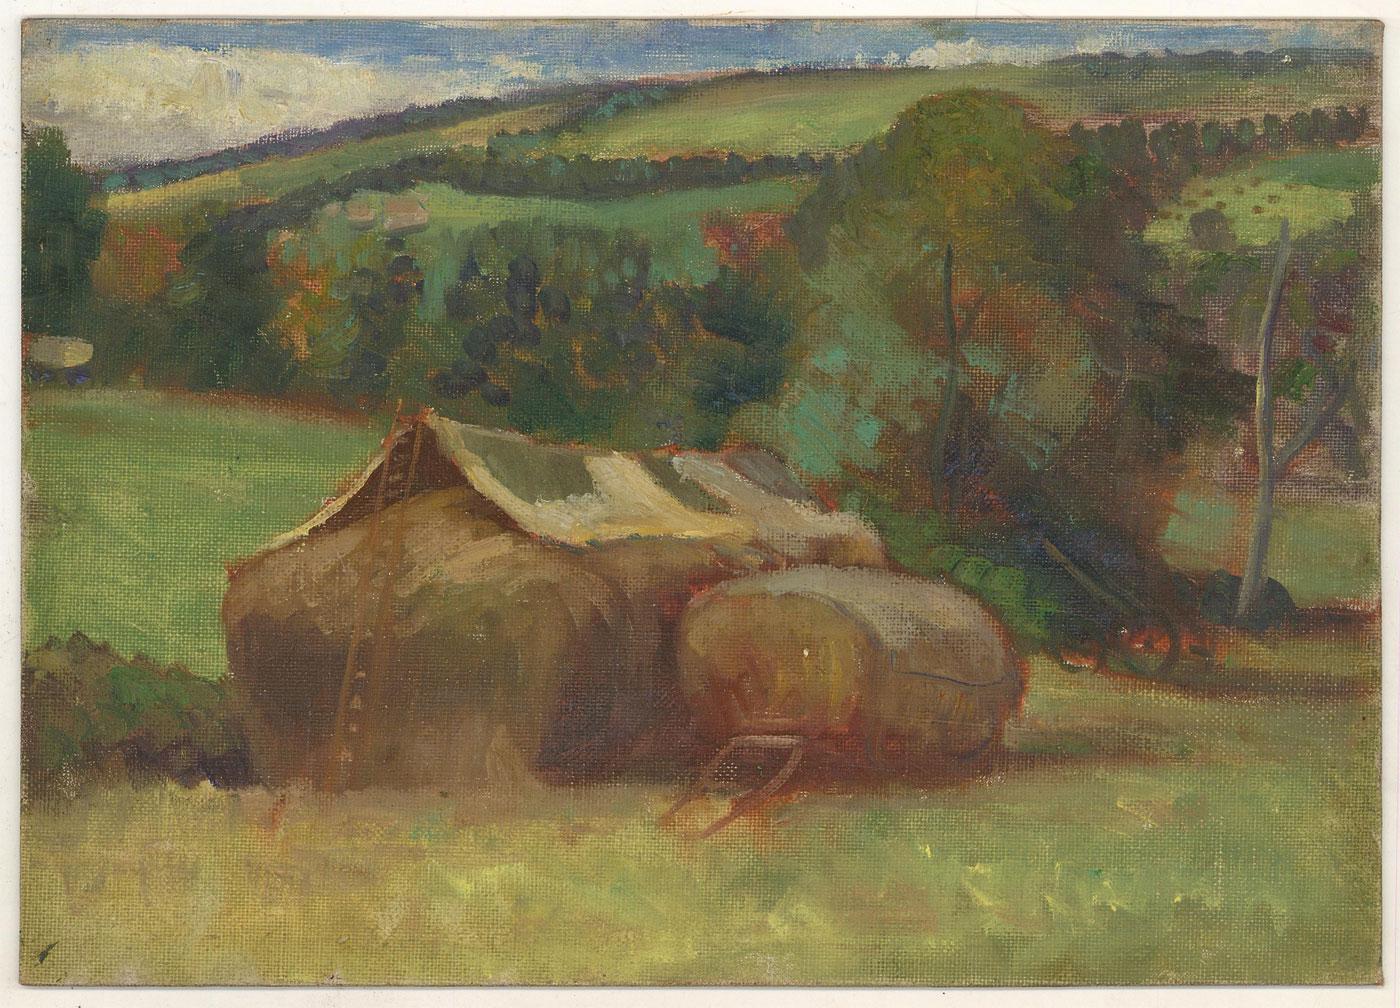 Ein reizvolles Ölgemälde des bekannten Alfred Thornton, das eine ländliche Landschaft mit einem Heuwagen und Bäumen im Hintergrund zeigt. Nicht signiert. Auf Leinwandkarton.